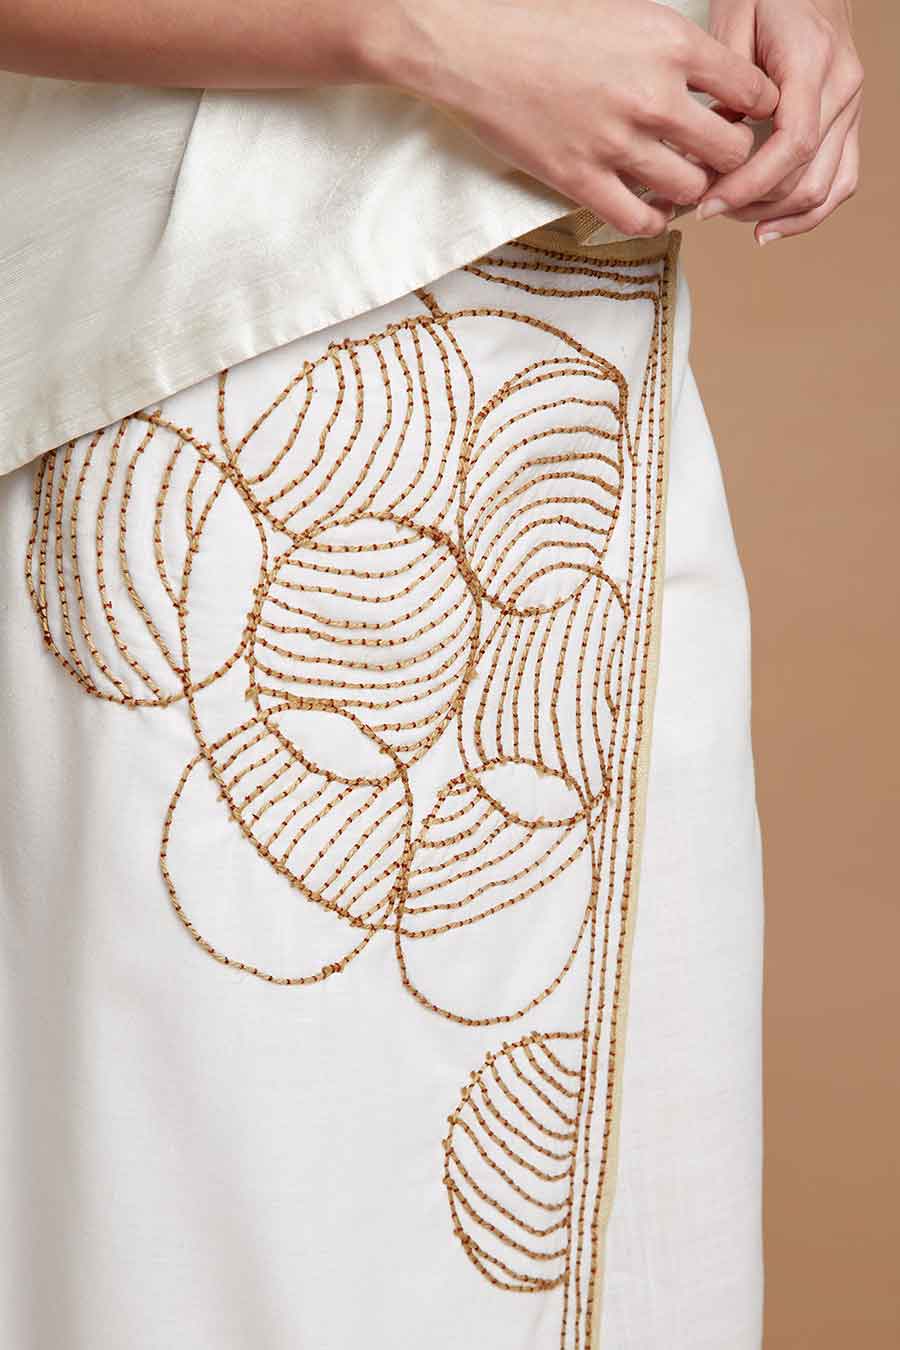 White Kaftan Top & Skirt Co-Ord Set